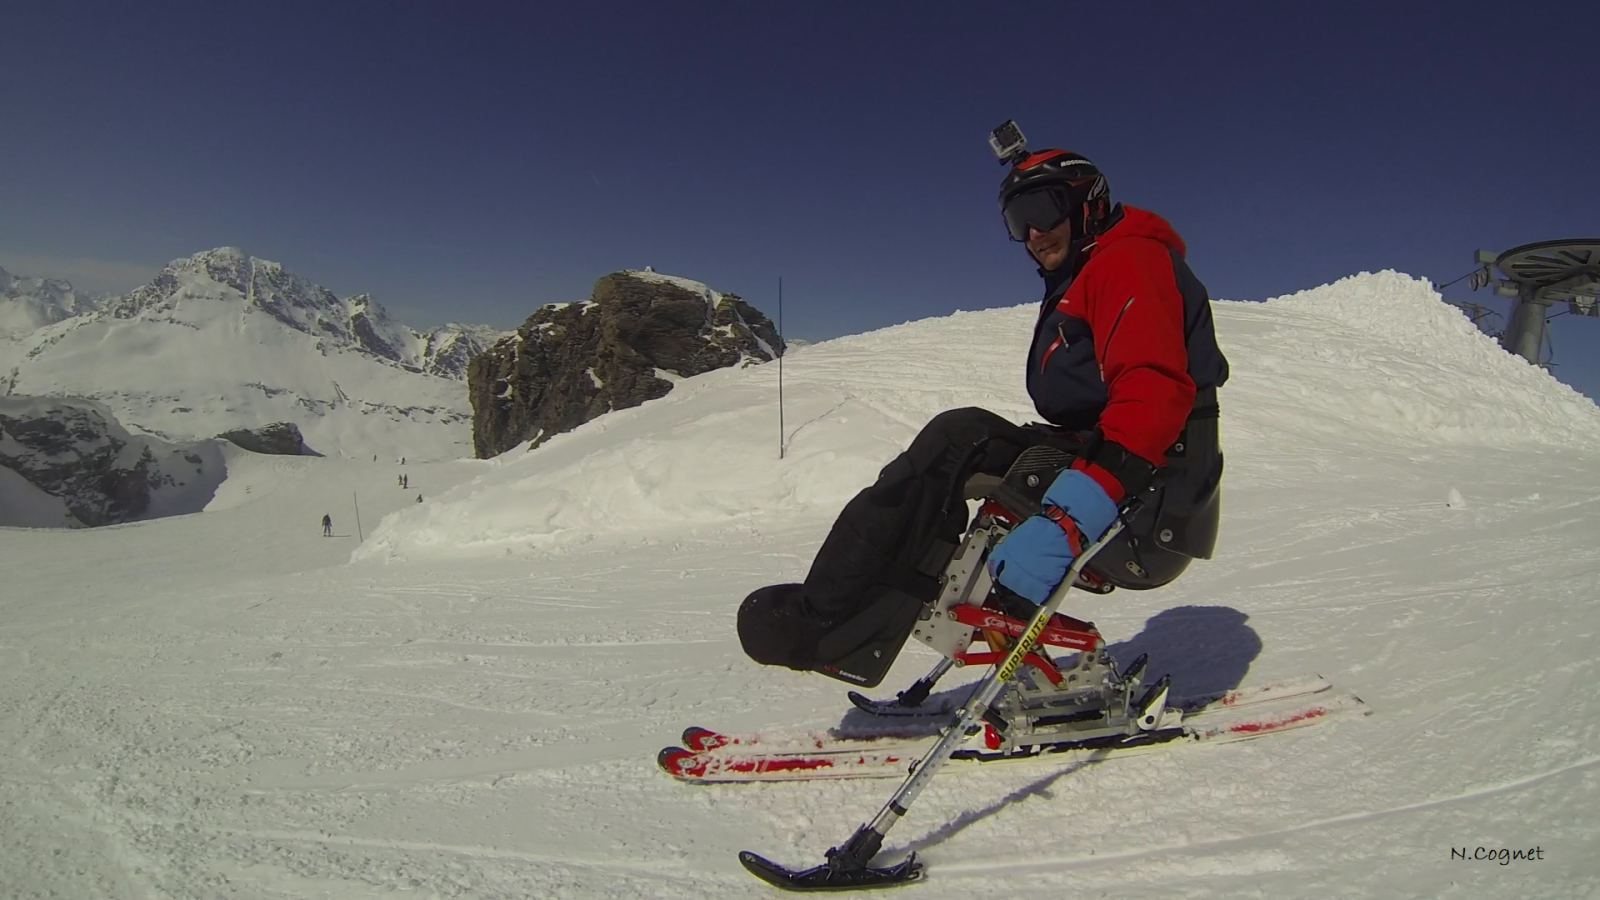 Dual ski with 'Loisirs & Glisse pour tous' ski school